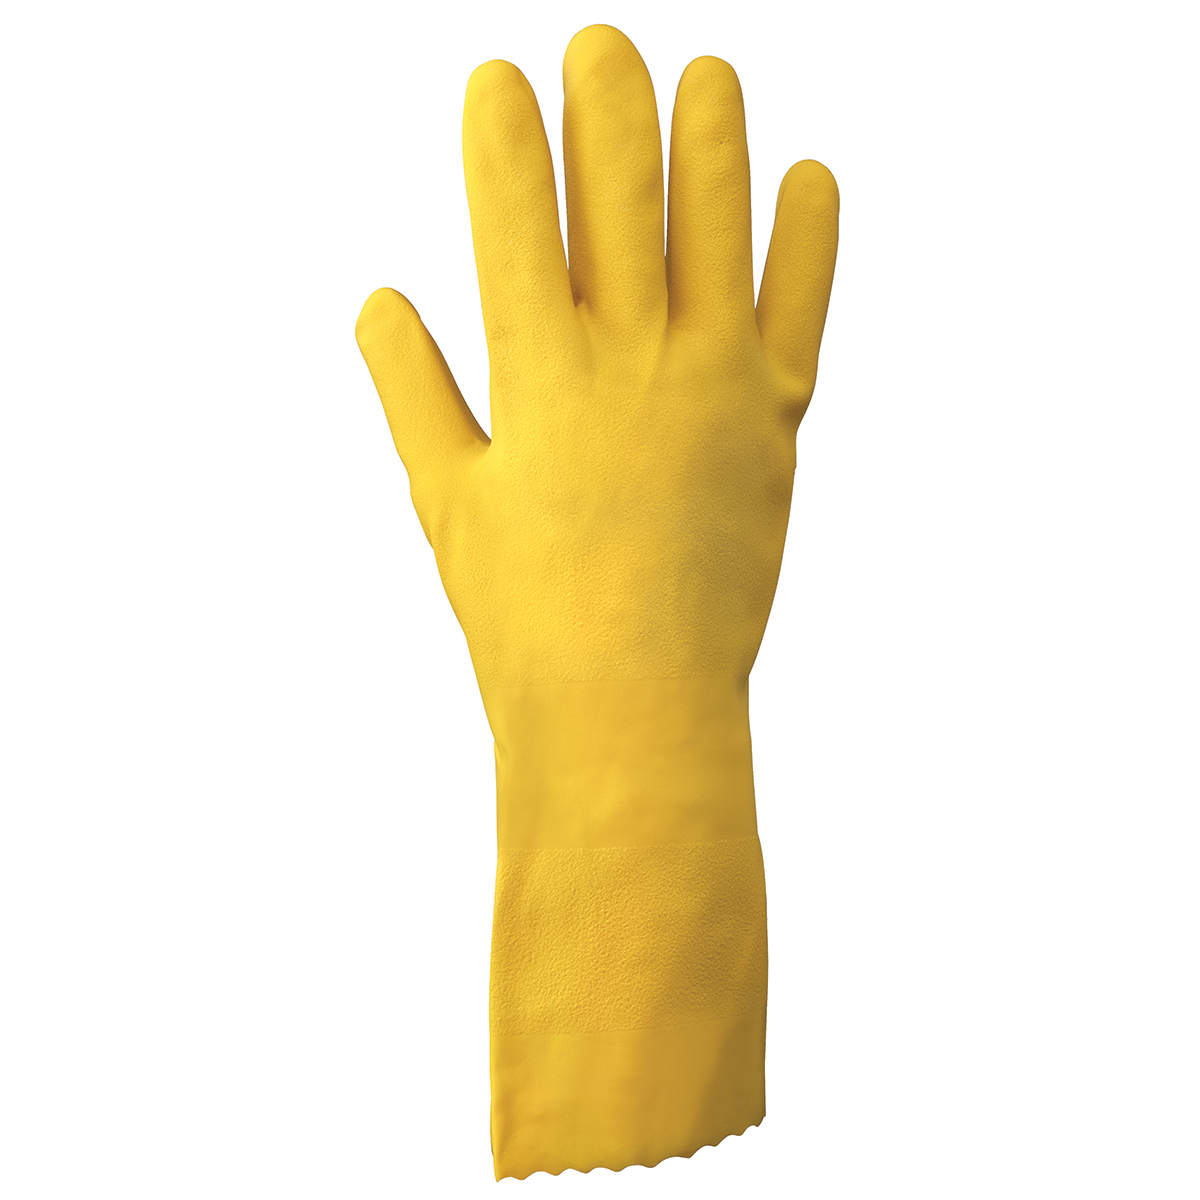 SHOWA® Size 10 Orange 18 mil Latex Chemical Resistant Gloves